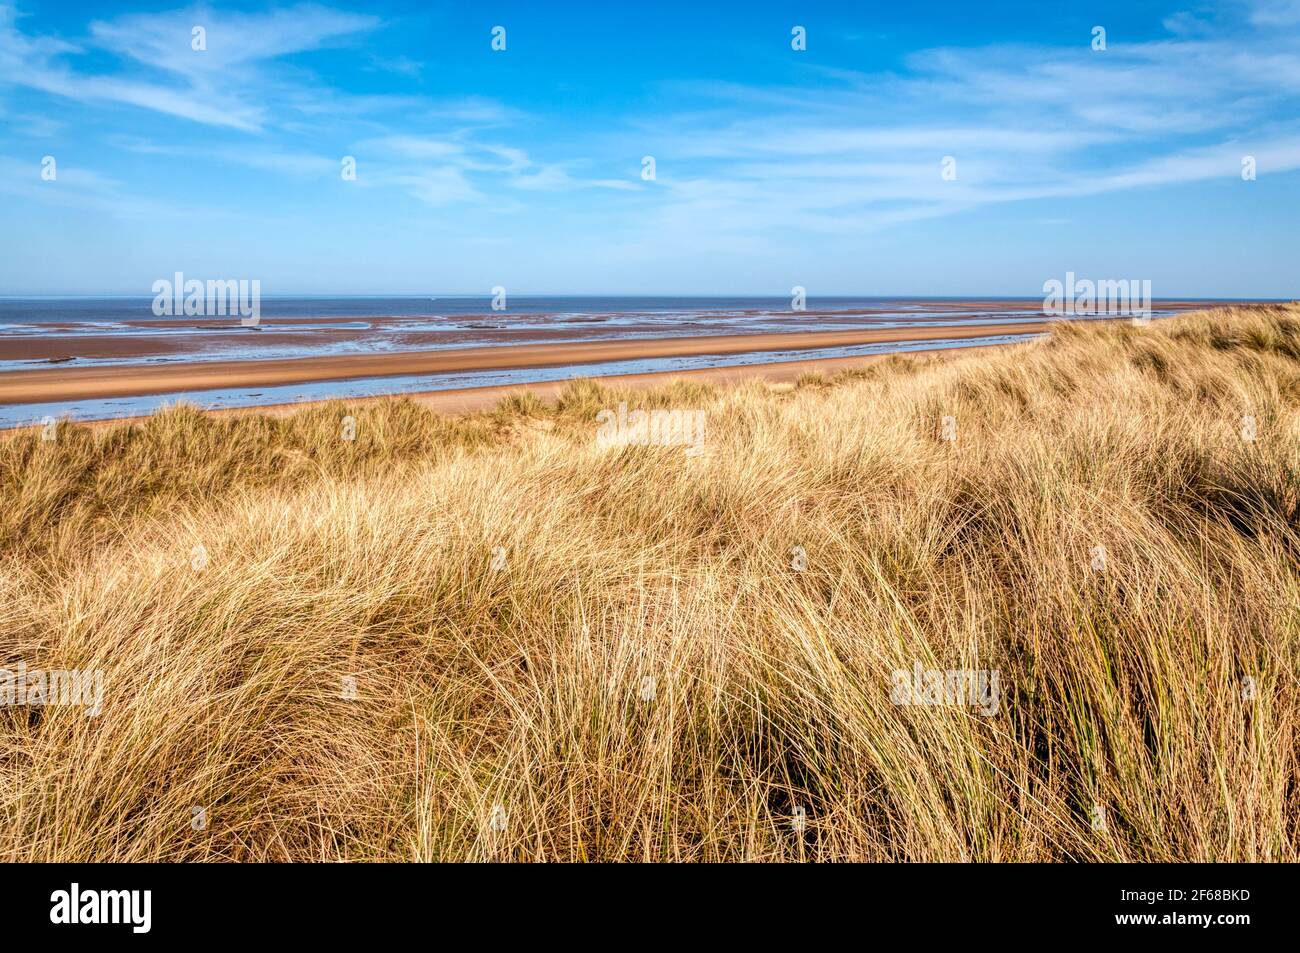 Ein leerer Holme-next-the-Sea Strand, North Norfolk. Mit Marrammgras bedeckte Dünen, Ammophila arenaria. Stockfoto